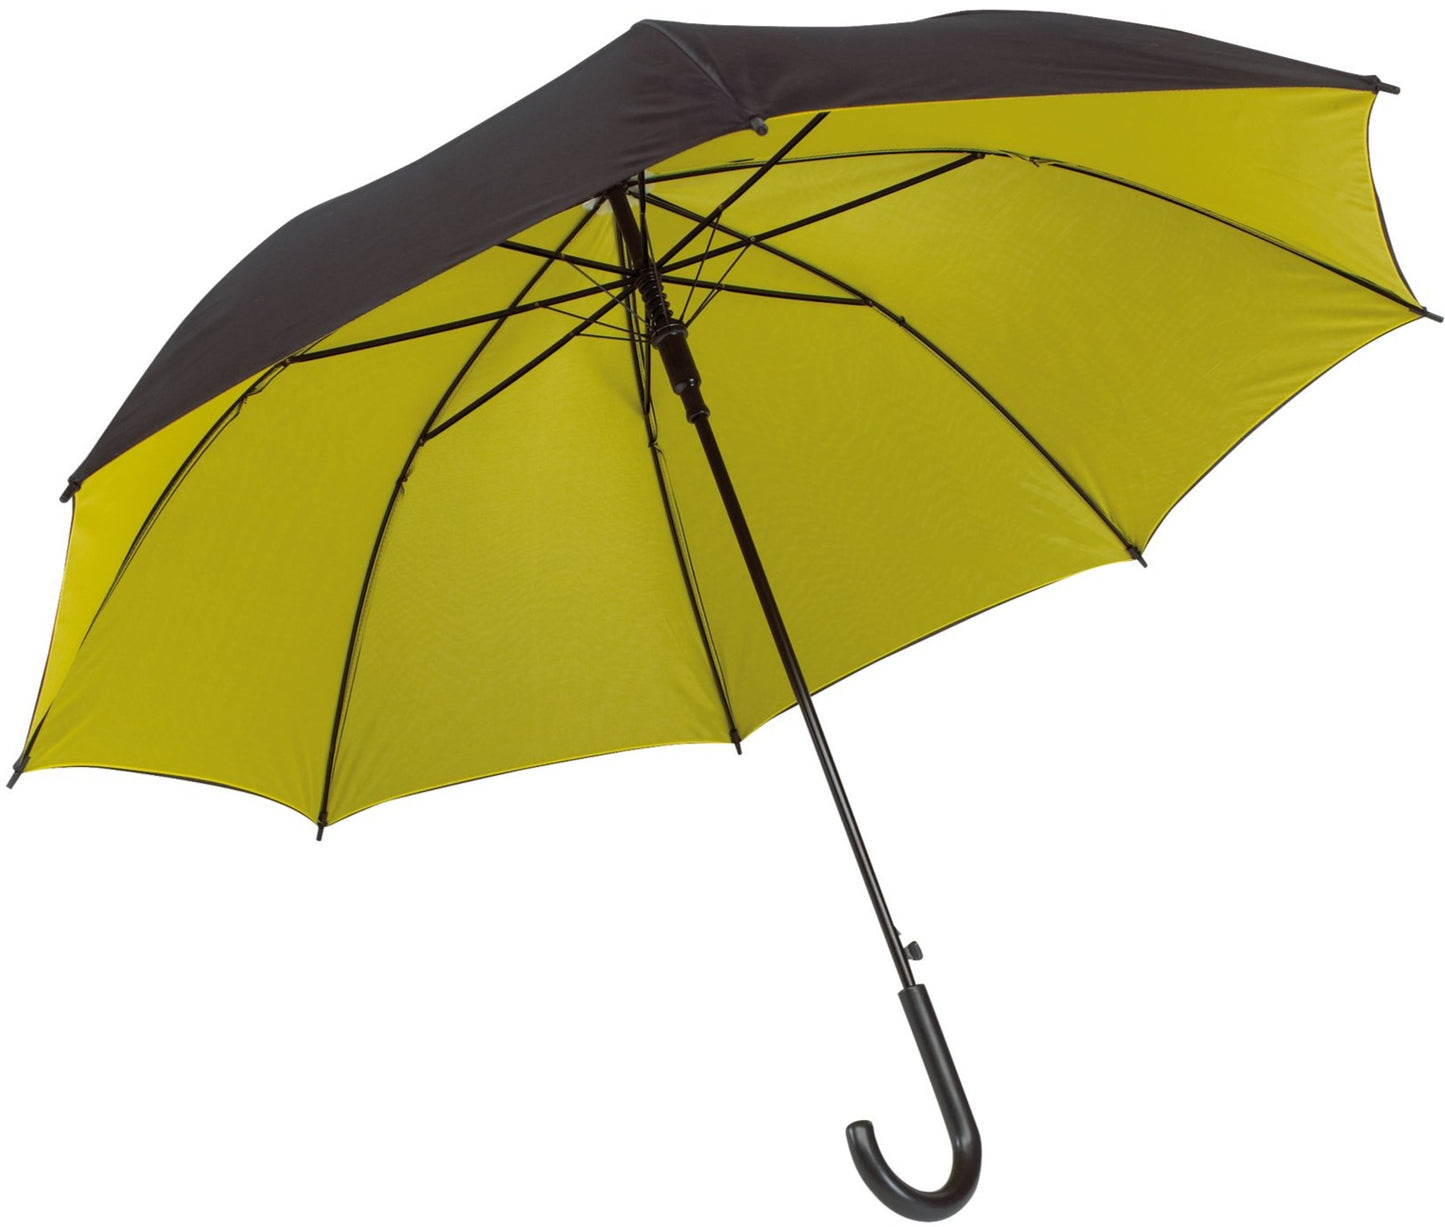 Κίτρινη/μαύρη ομπρέλα, με διπλό ύφασμα, μακριά και αυτόματη.